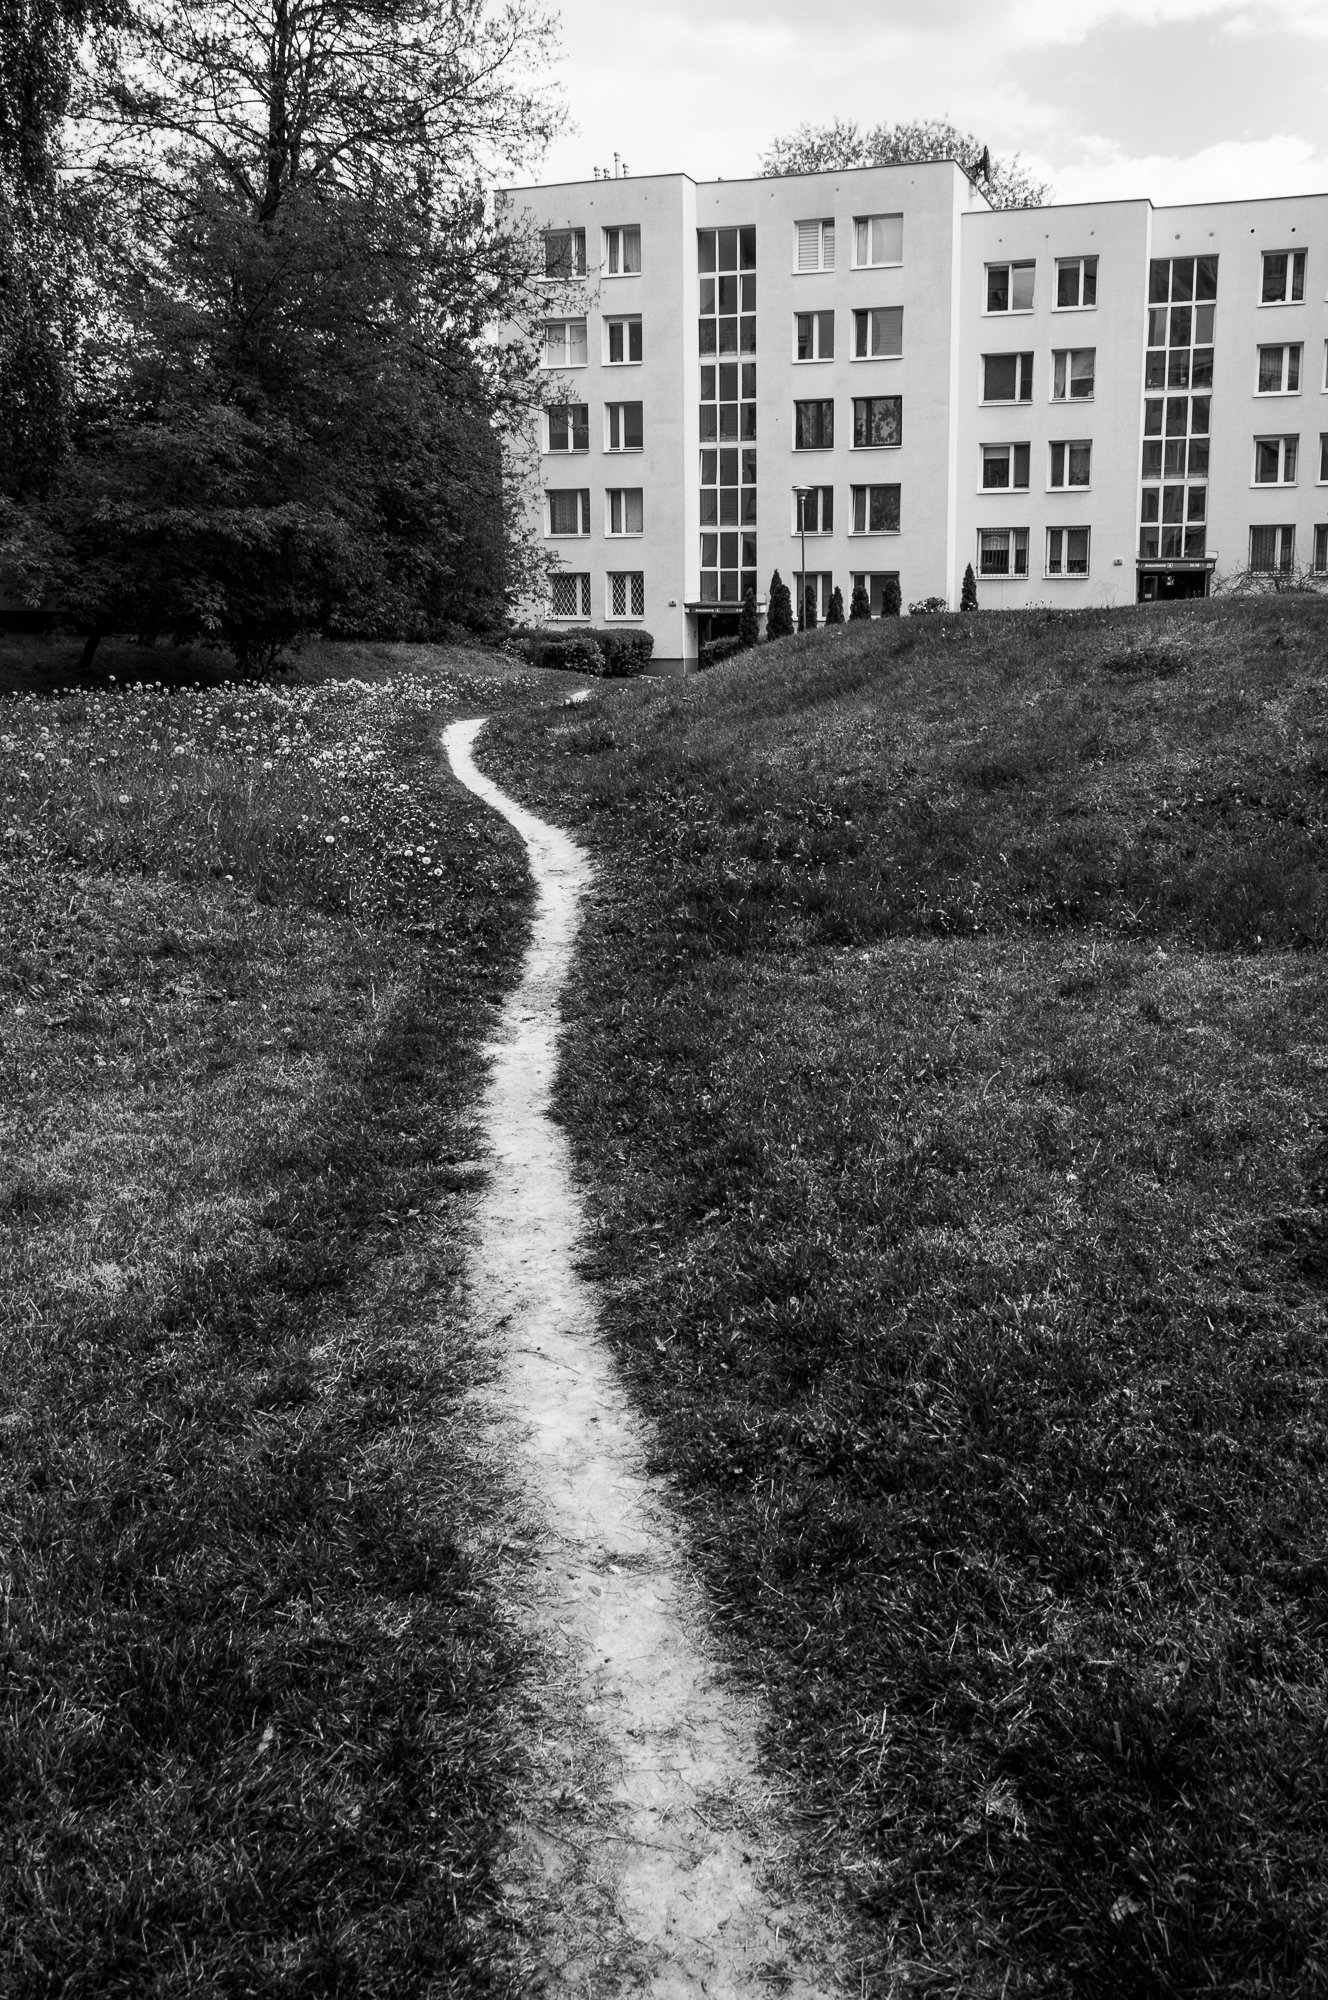 Adam Mazek Photography Warsaw (Warszawa) 2017. Post: "Another advantage of creating." Path. Minimalism.